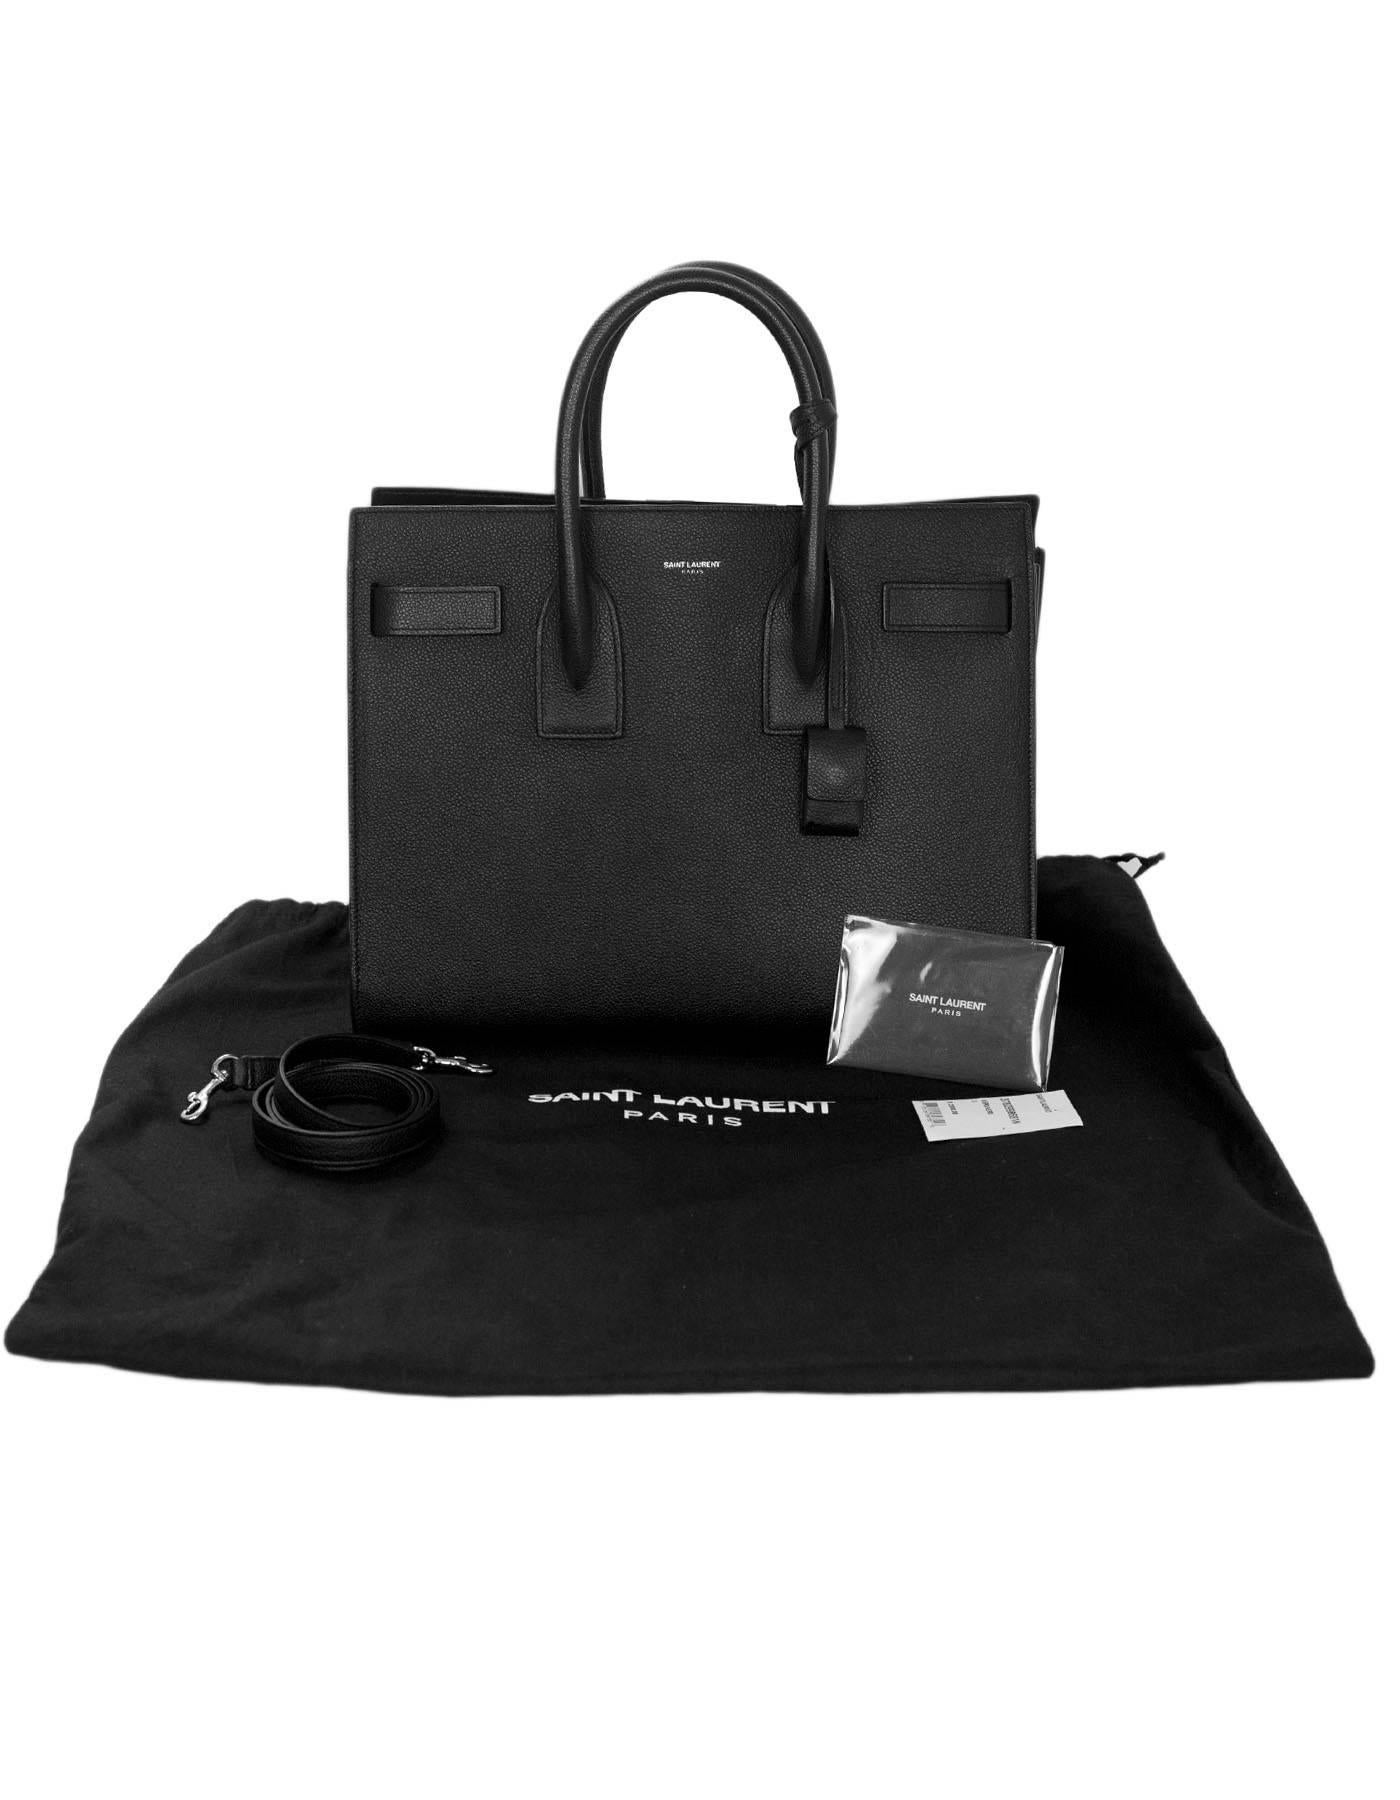 Yves Saint Laurent Black Pebbled Leather Small Sac De Jour Tote Bag 6